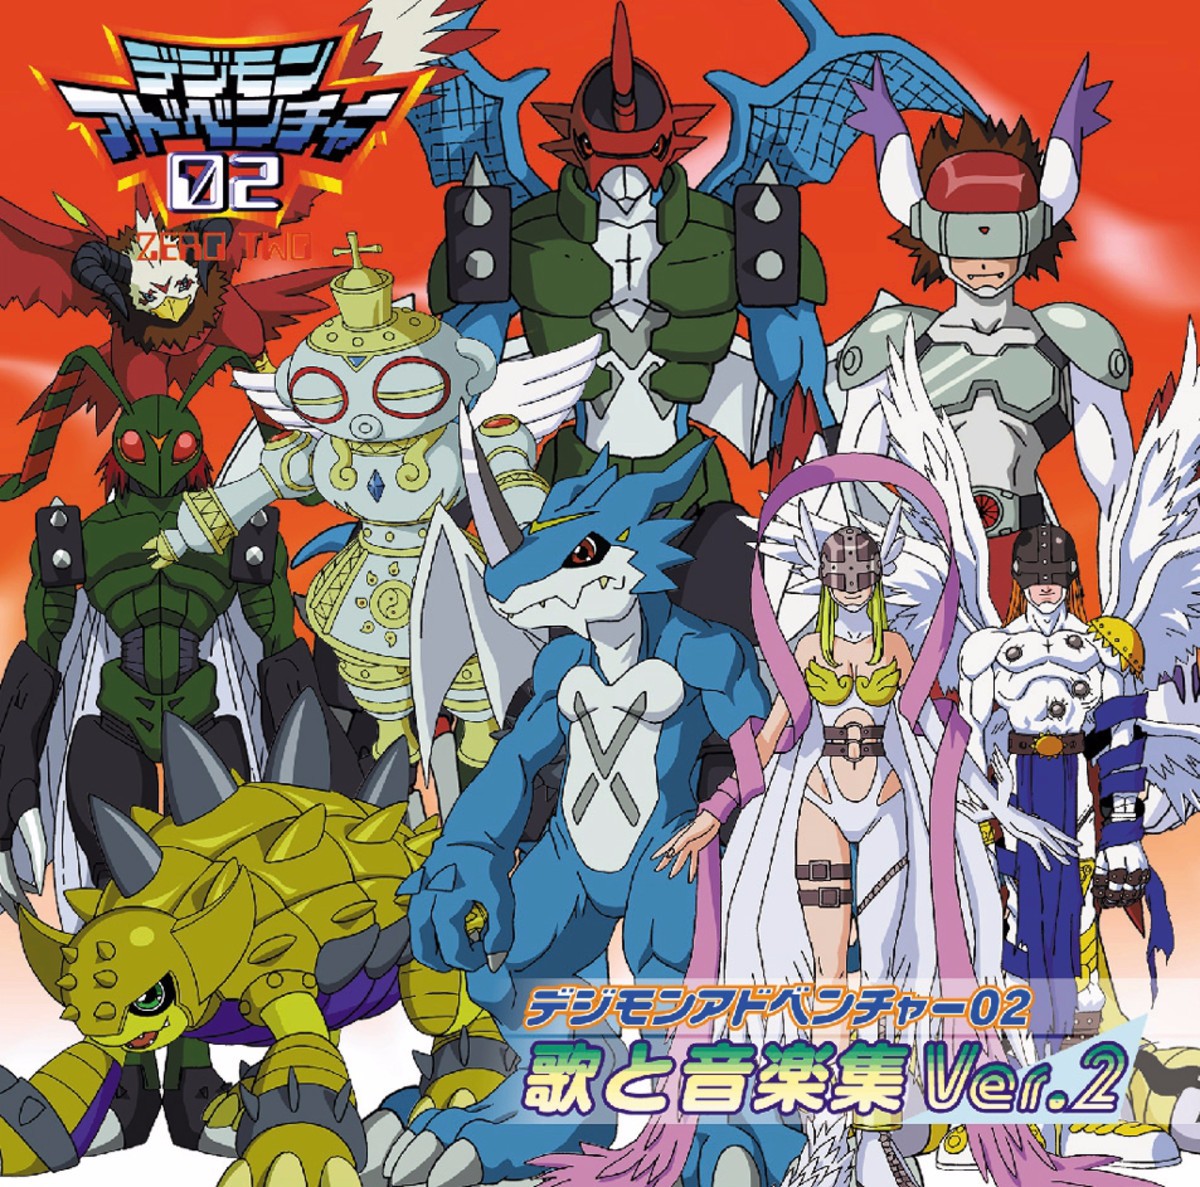 Revelado o elenco de dublagem de Digimon Adventure 02: O Início